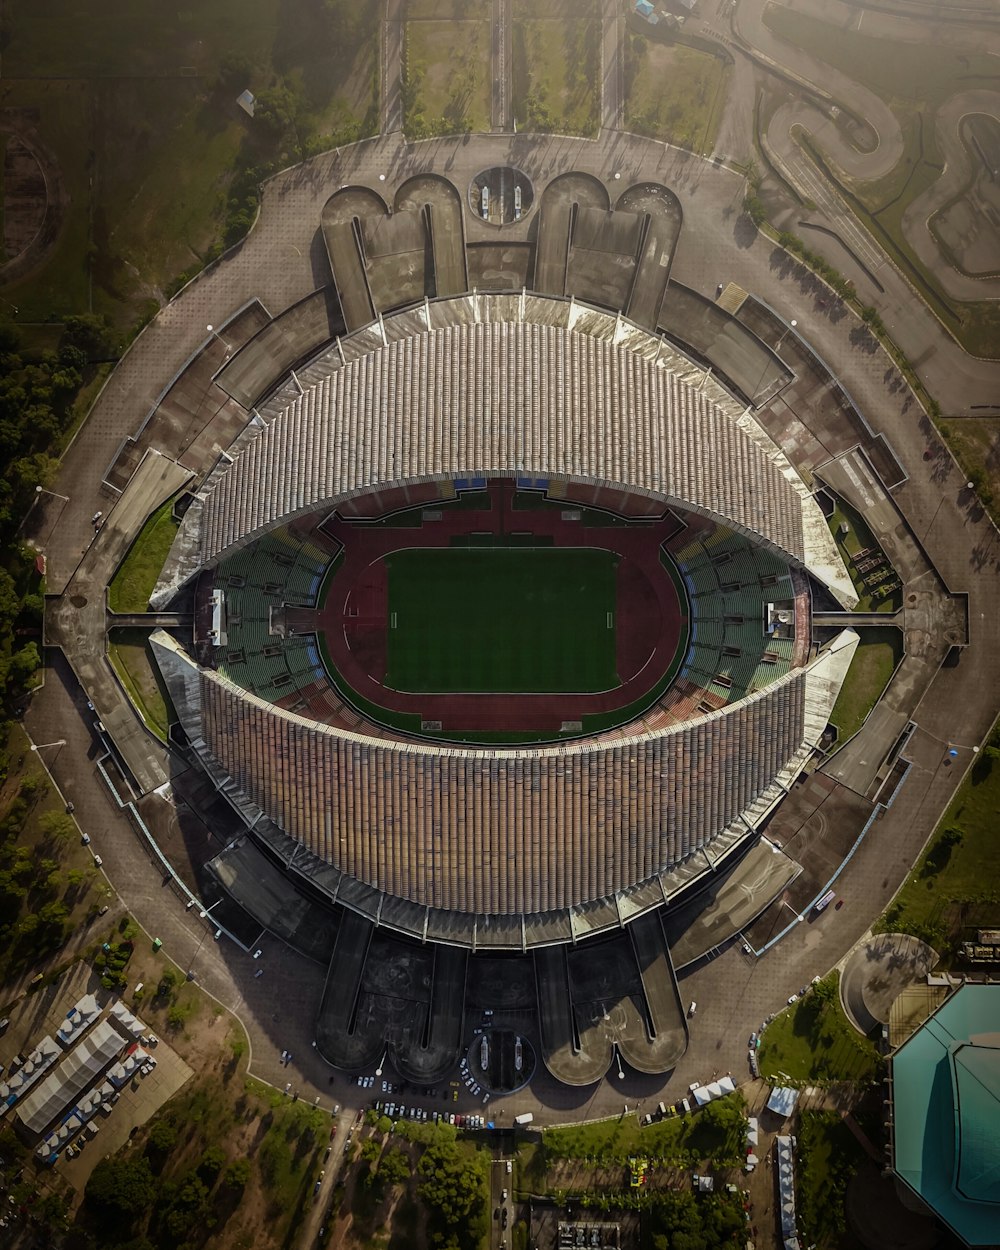 Vue aérienne du stade pendant la journée